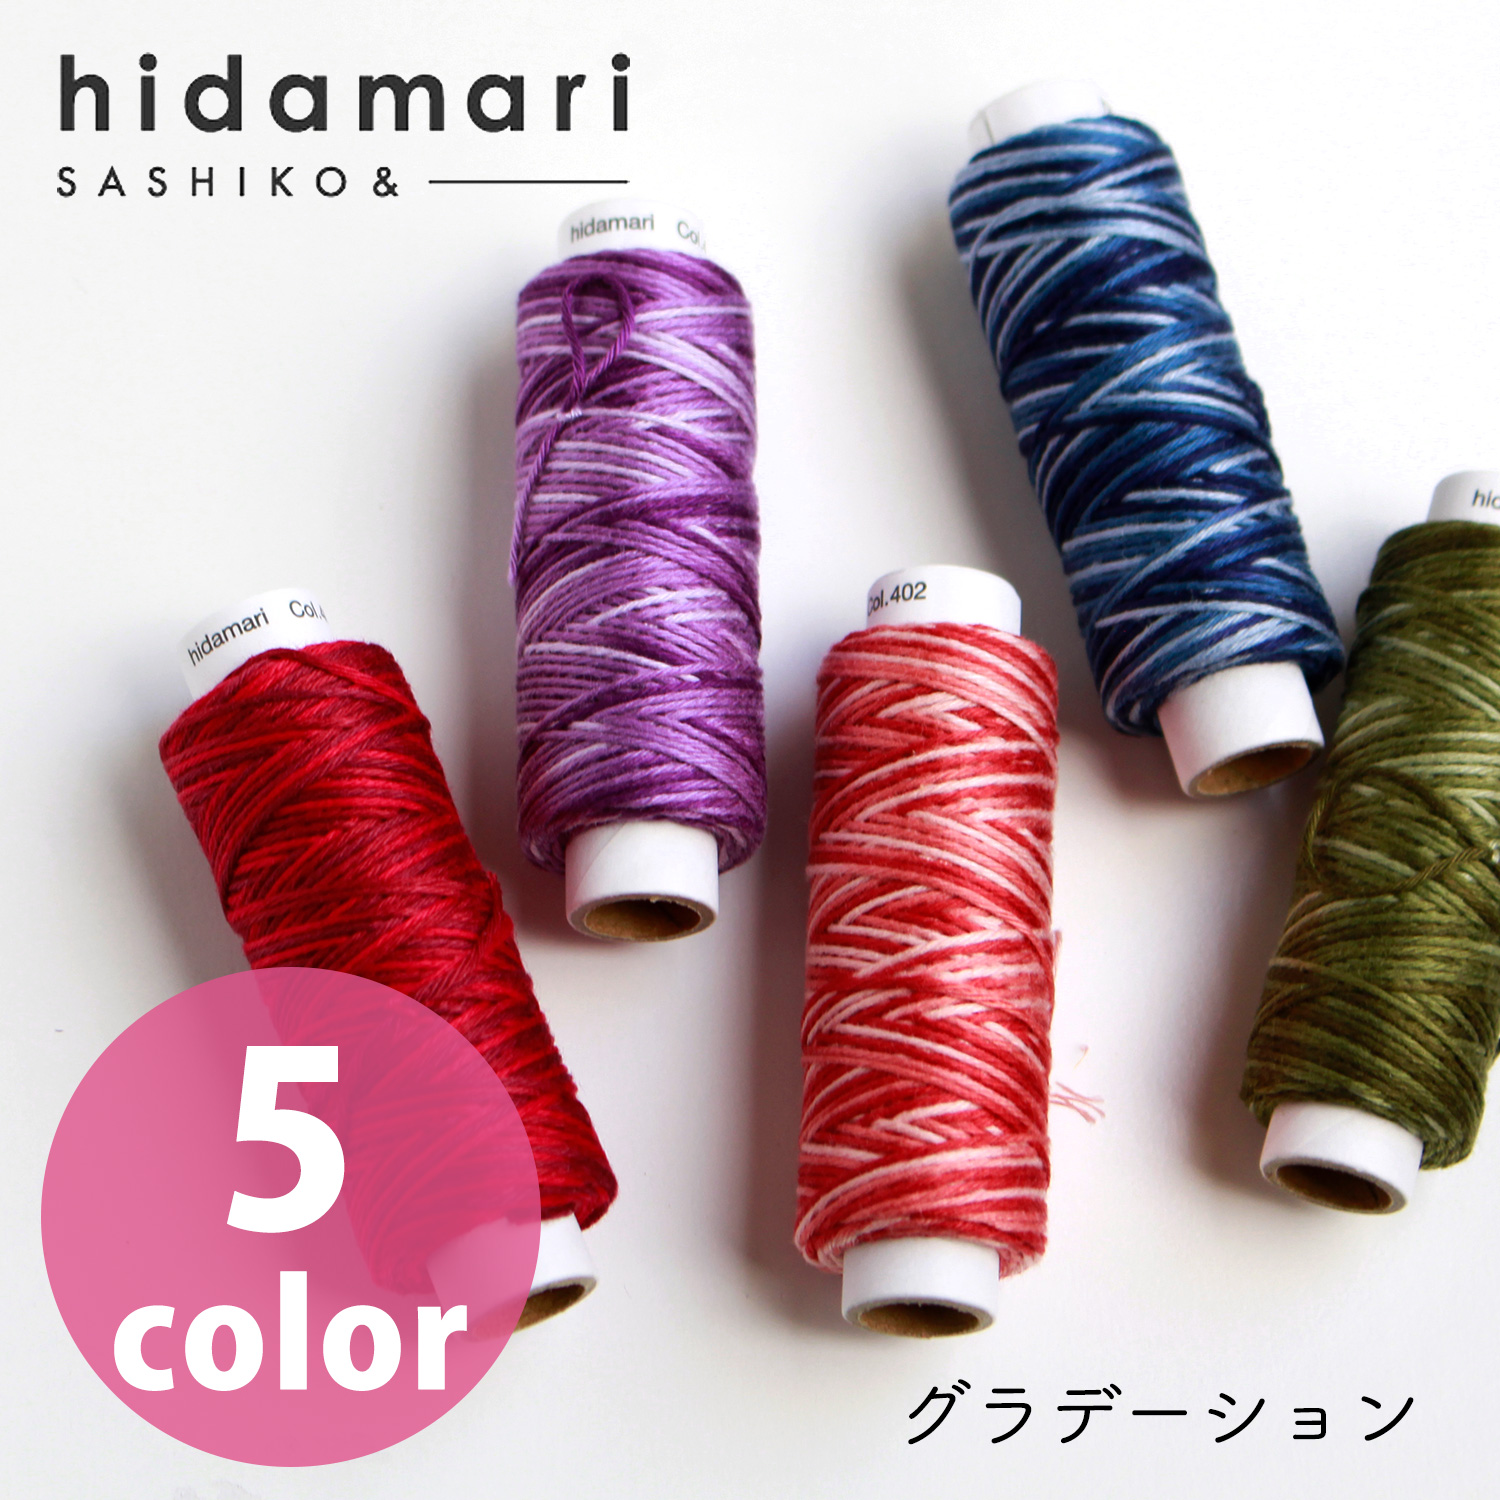 【リニューアル】CS122302-401~405 コスモ 刺し子糸(グラデーション) - hidamari - (個)